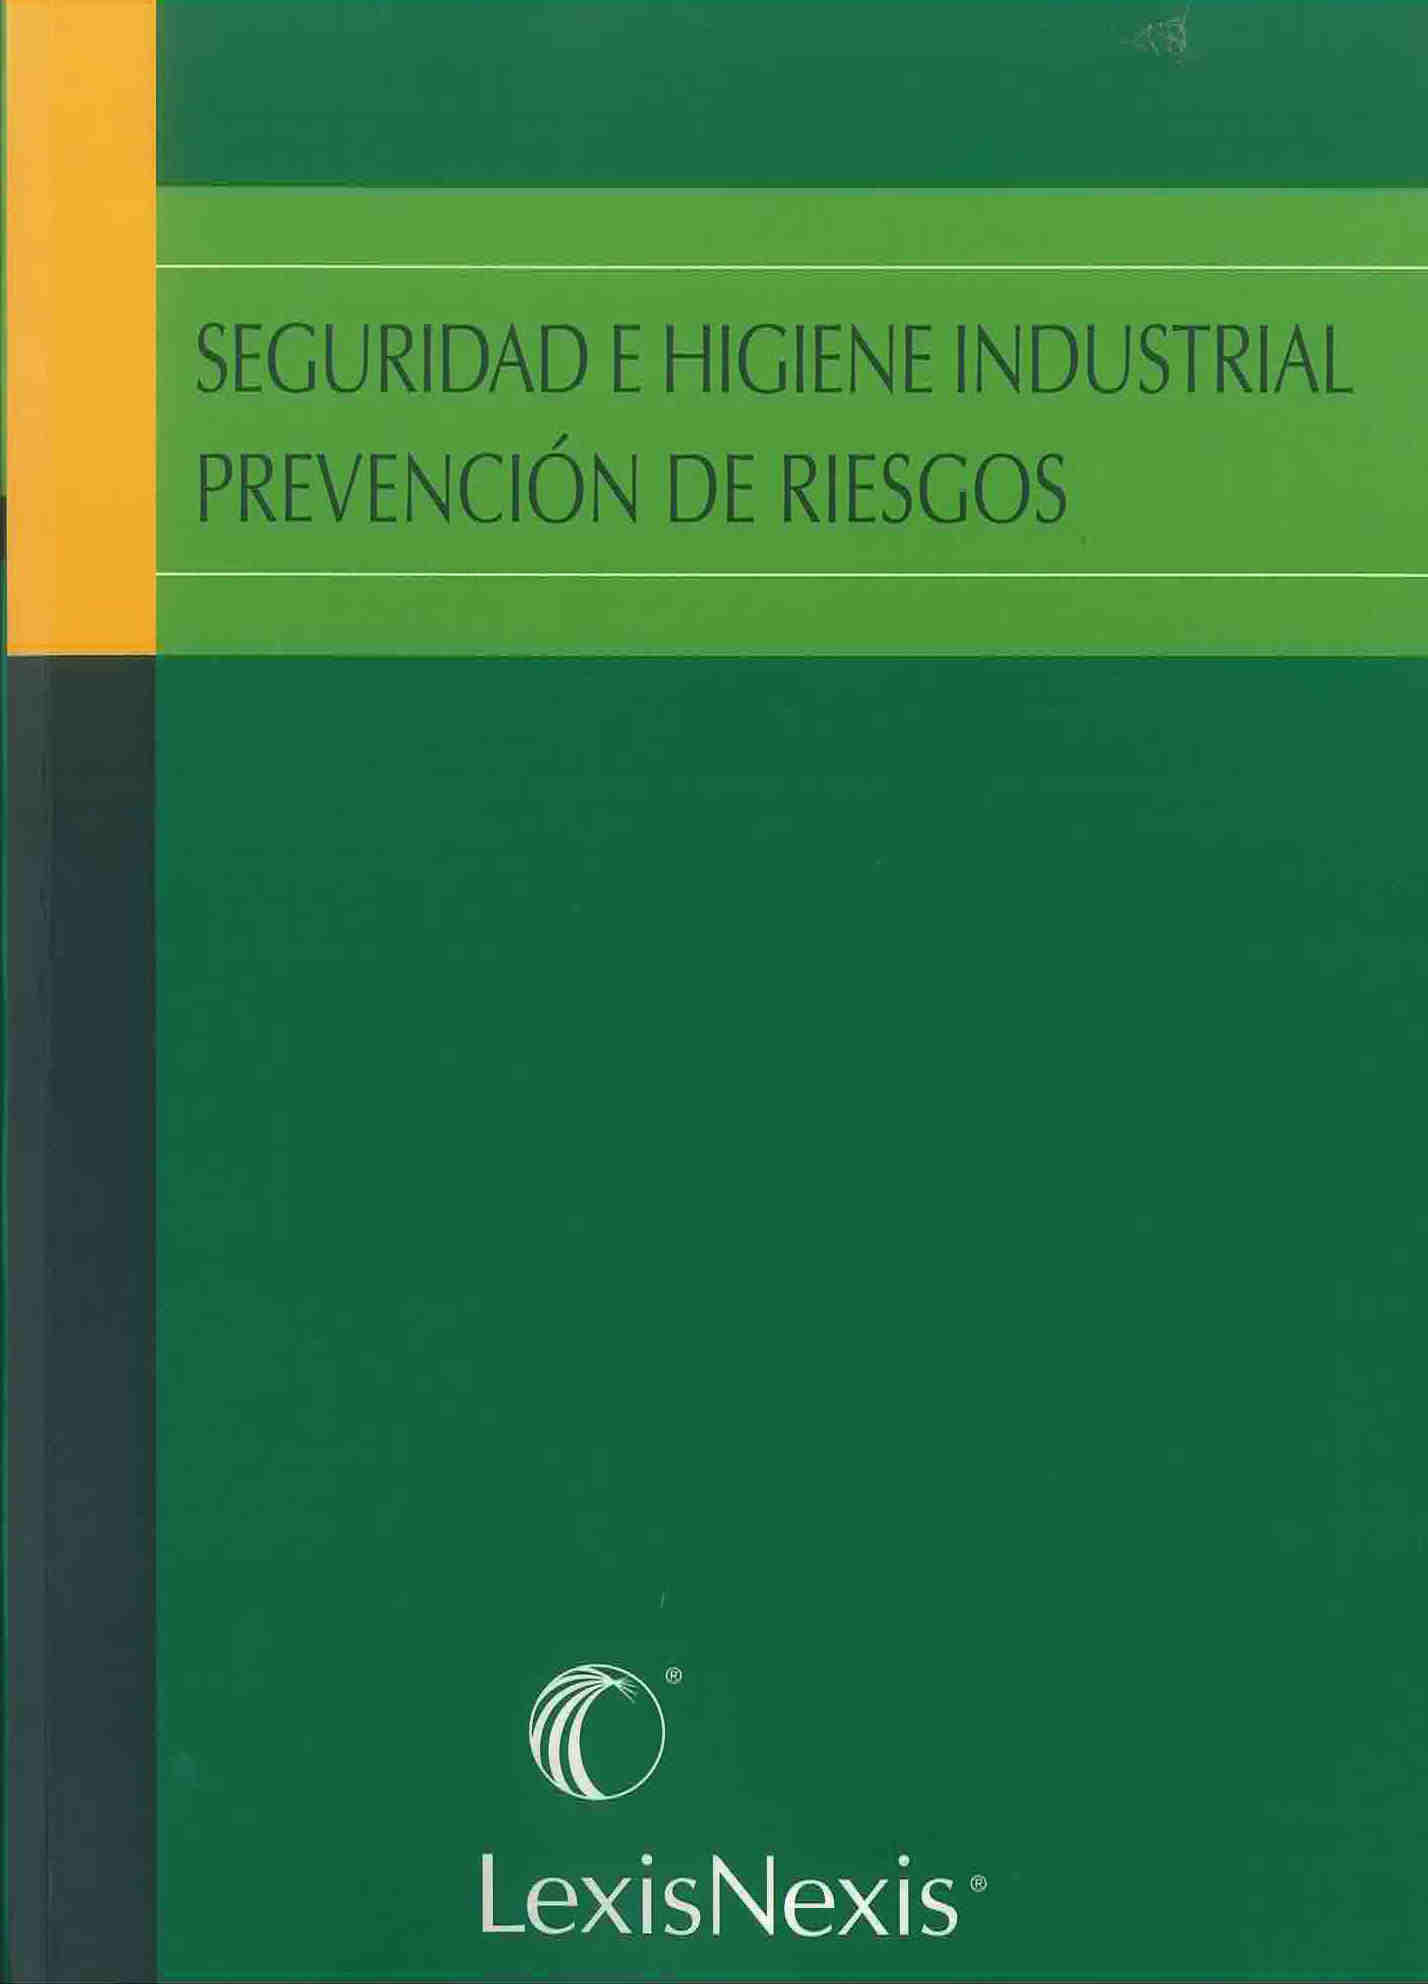 Seguridad e higiene industrial prevención de riesgos